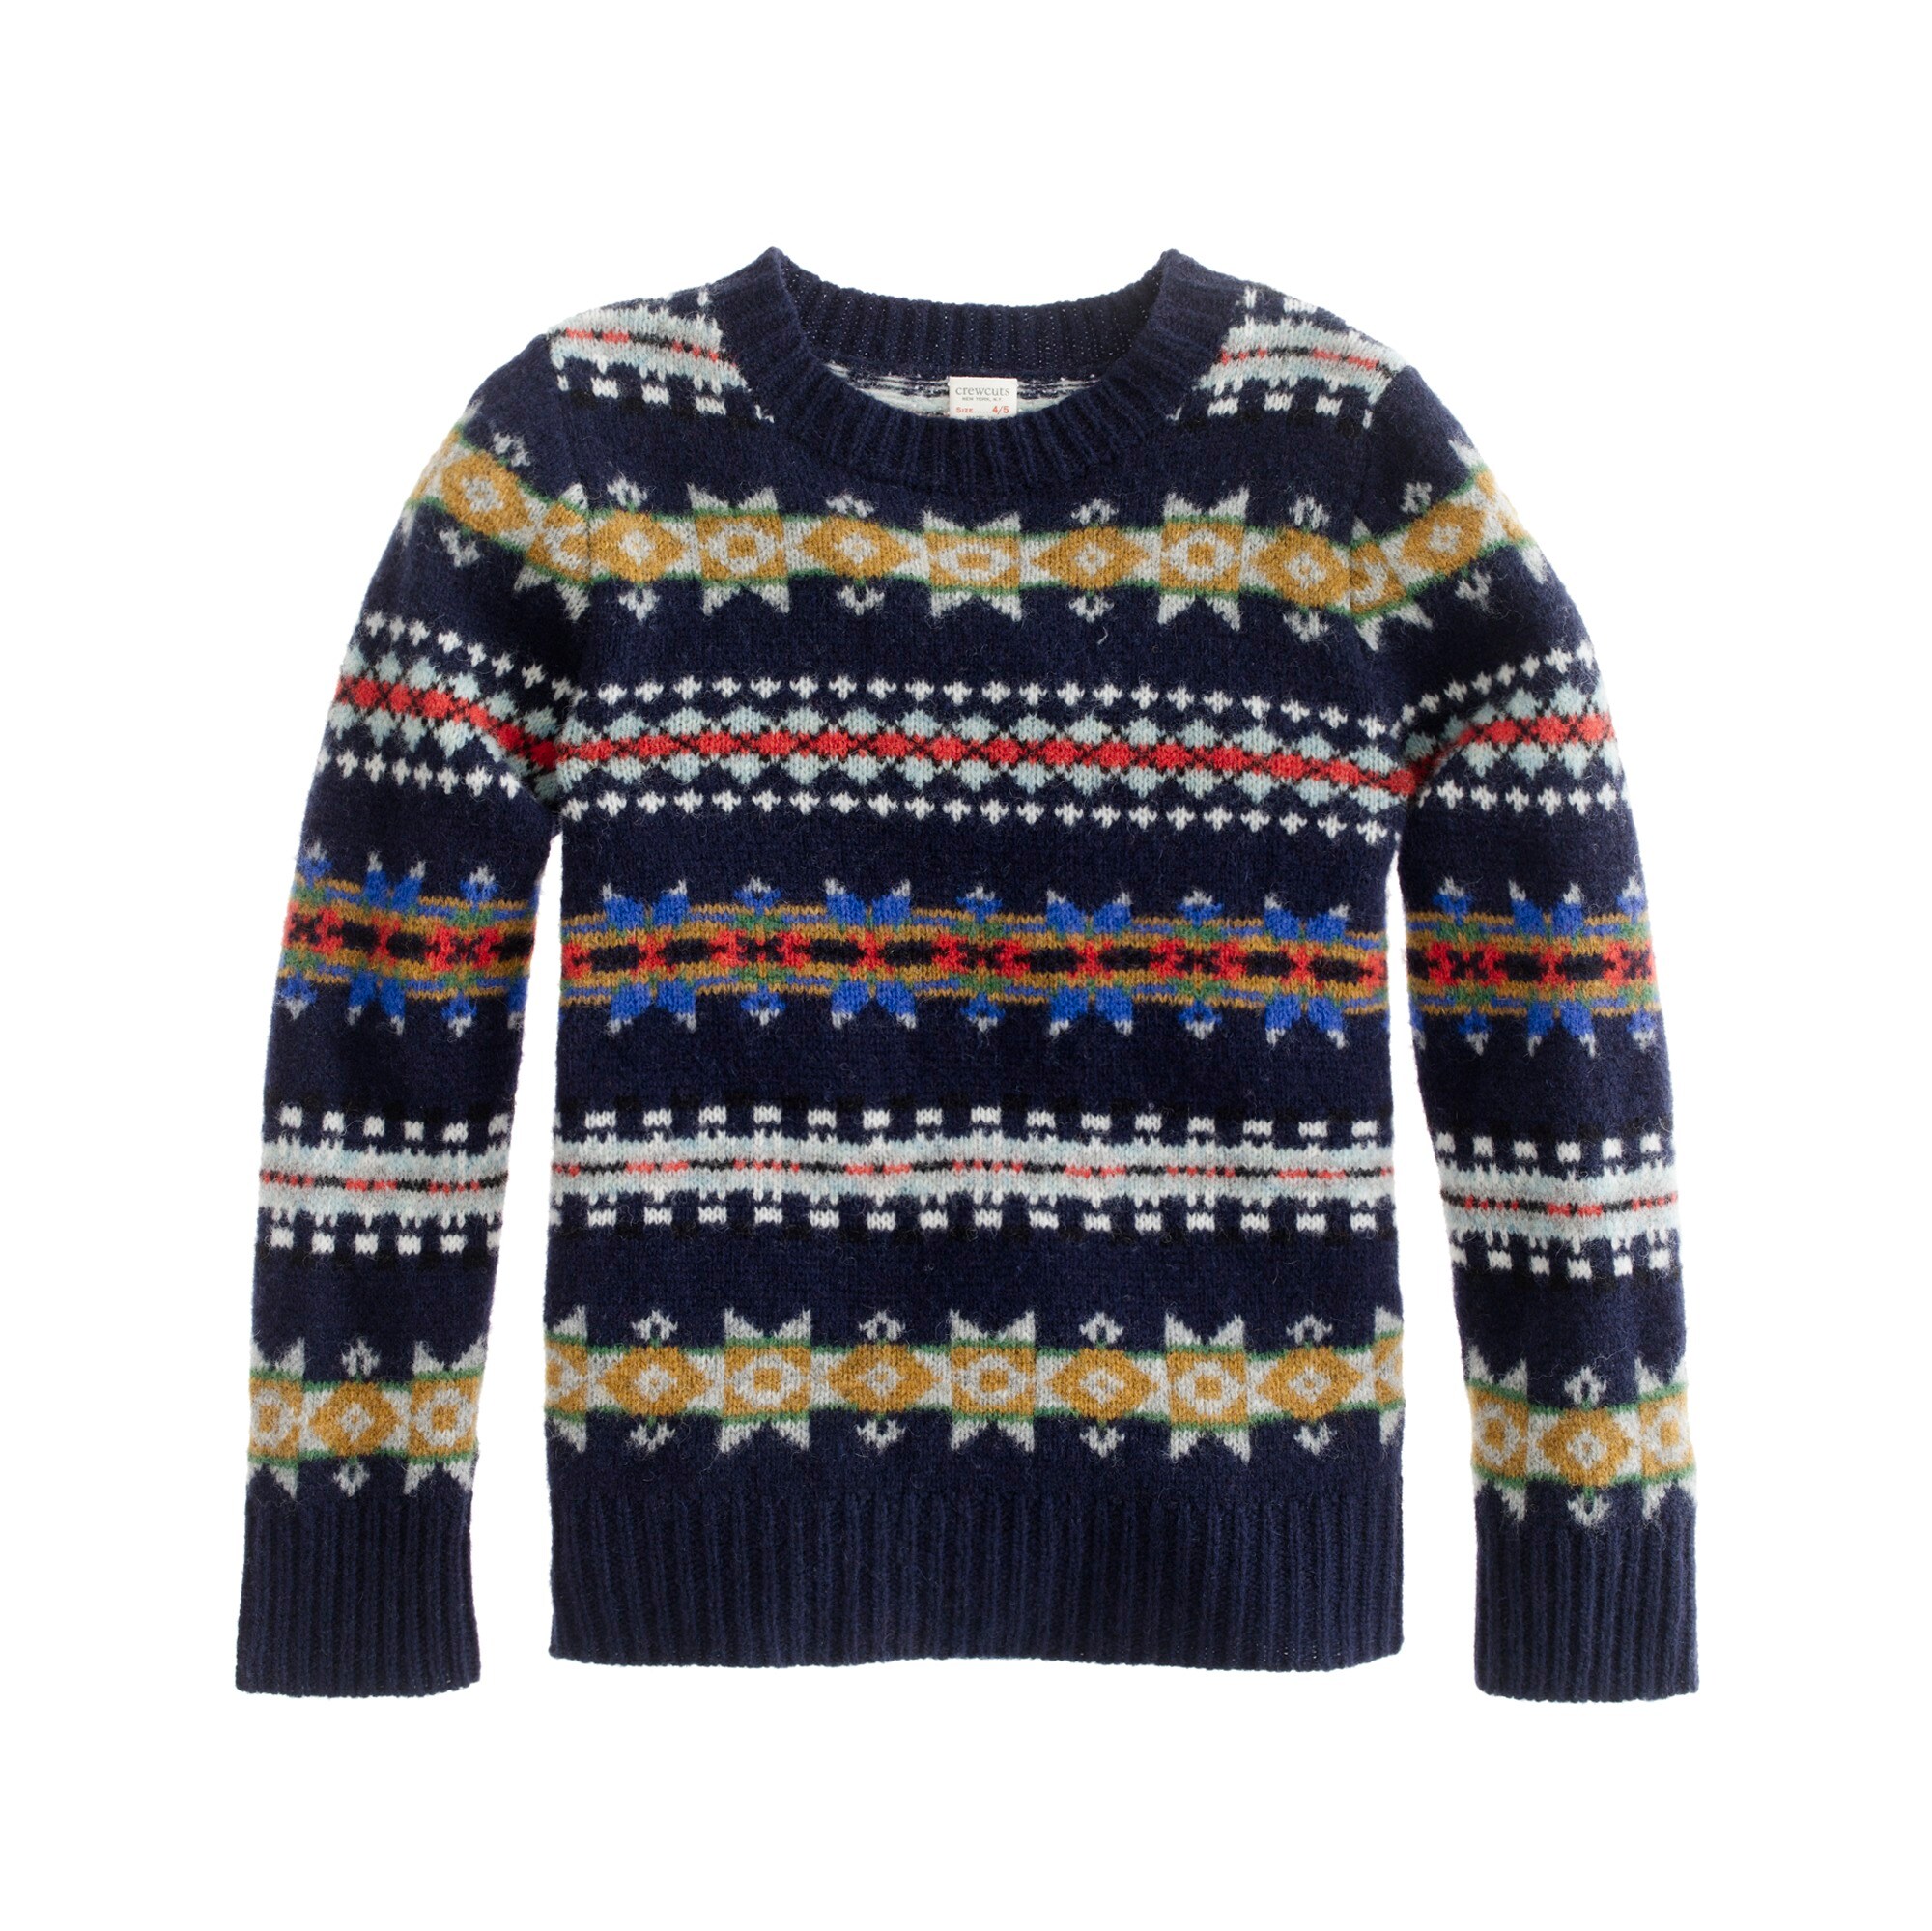 Boys' lambswool Fair Isle sweater : Boy wool | J.Crew